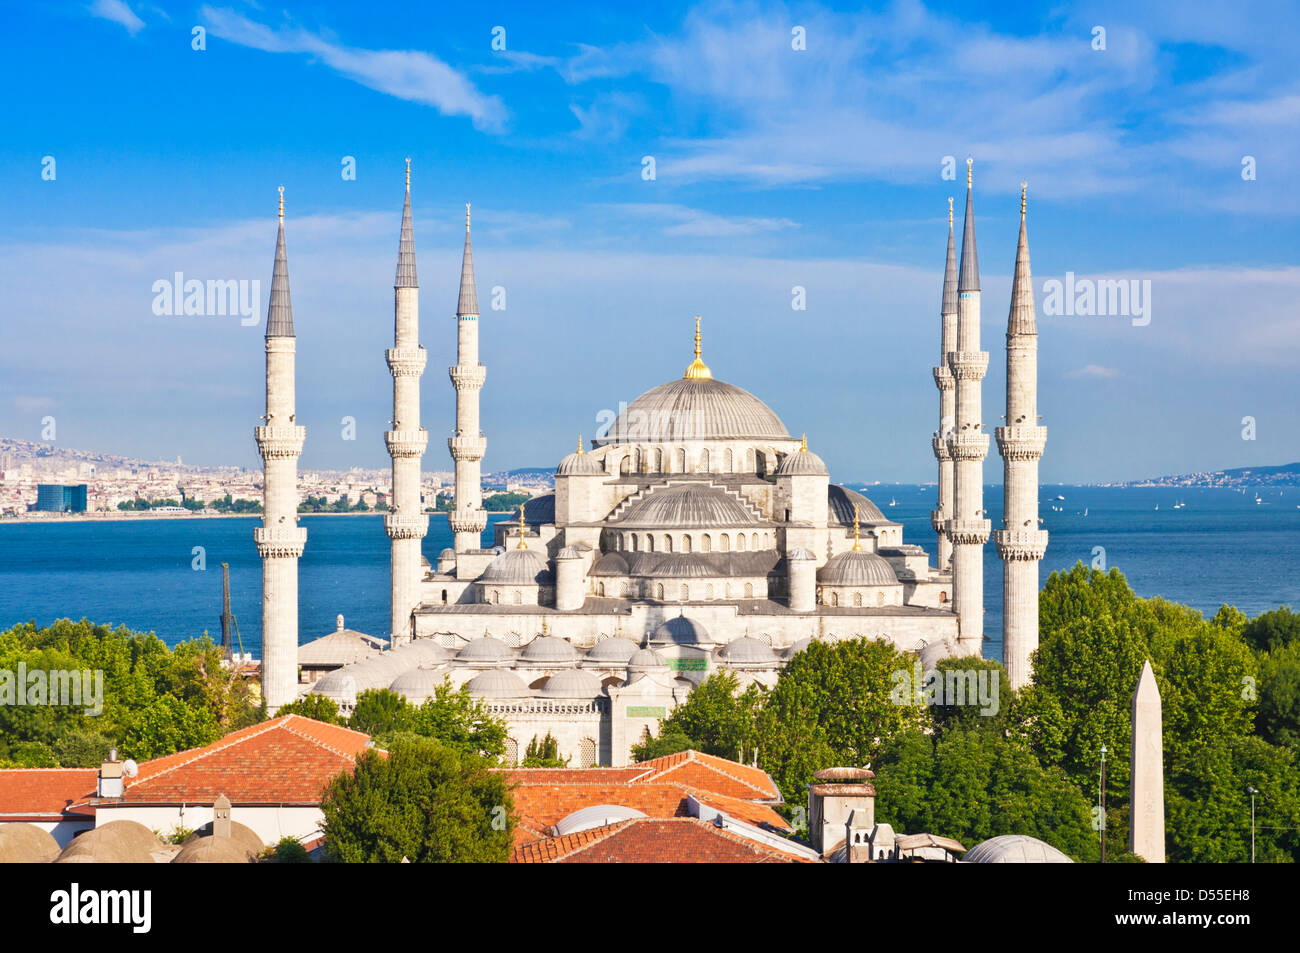 Die Blaue Moschee oder die Sultan-Ahmed-Moschee mit fünf Hauptkuppeln, sechs Minaretten und acht kleinen Kuppeln auf der Skyline von Istanbul Sultanahmet im Zentrum von Istanbul Stockfoto